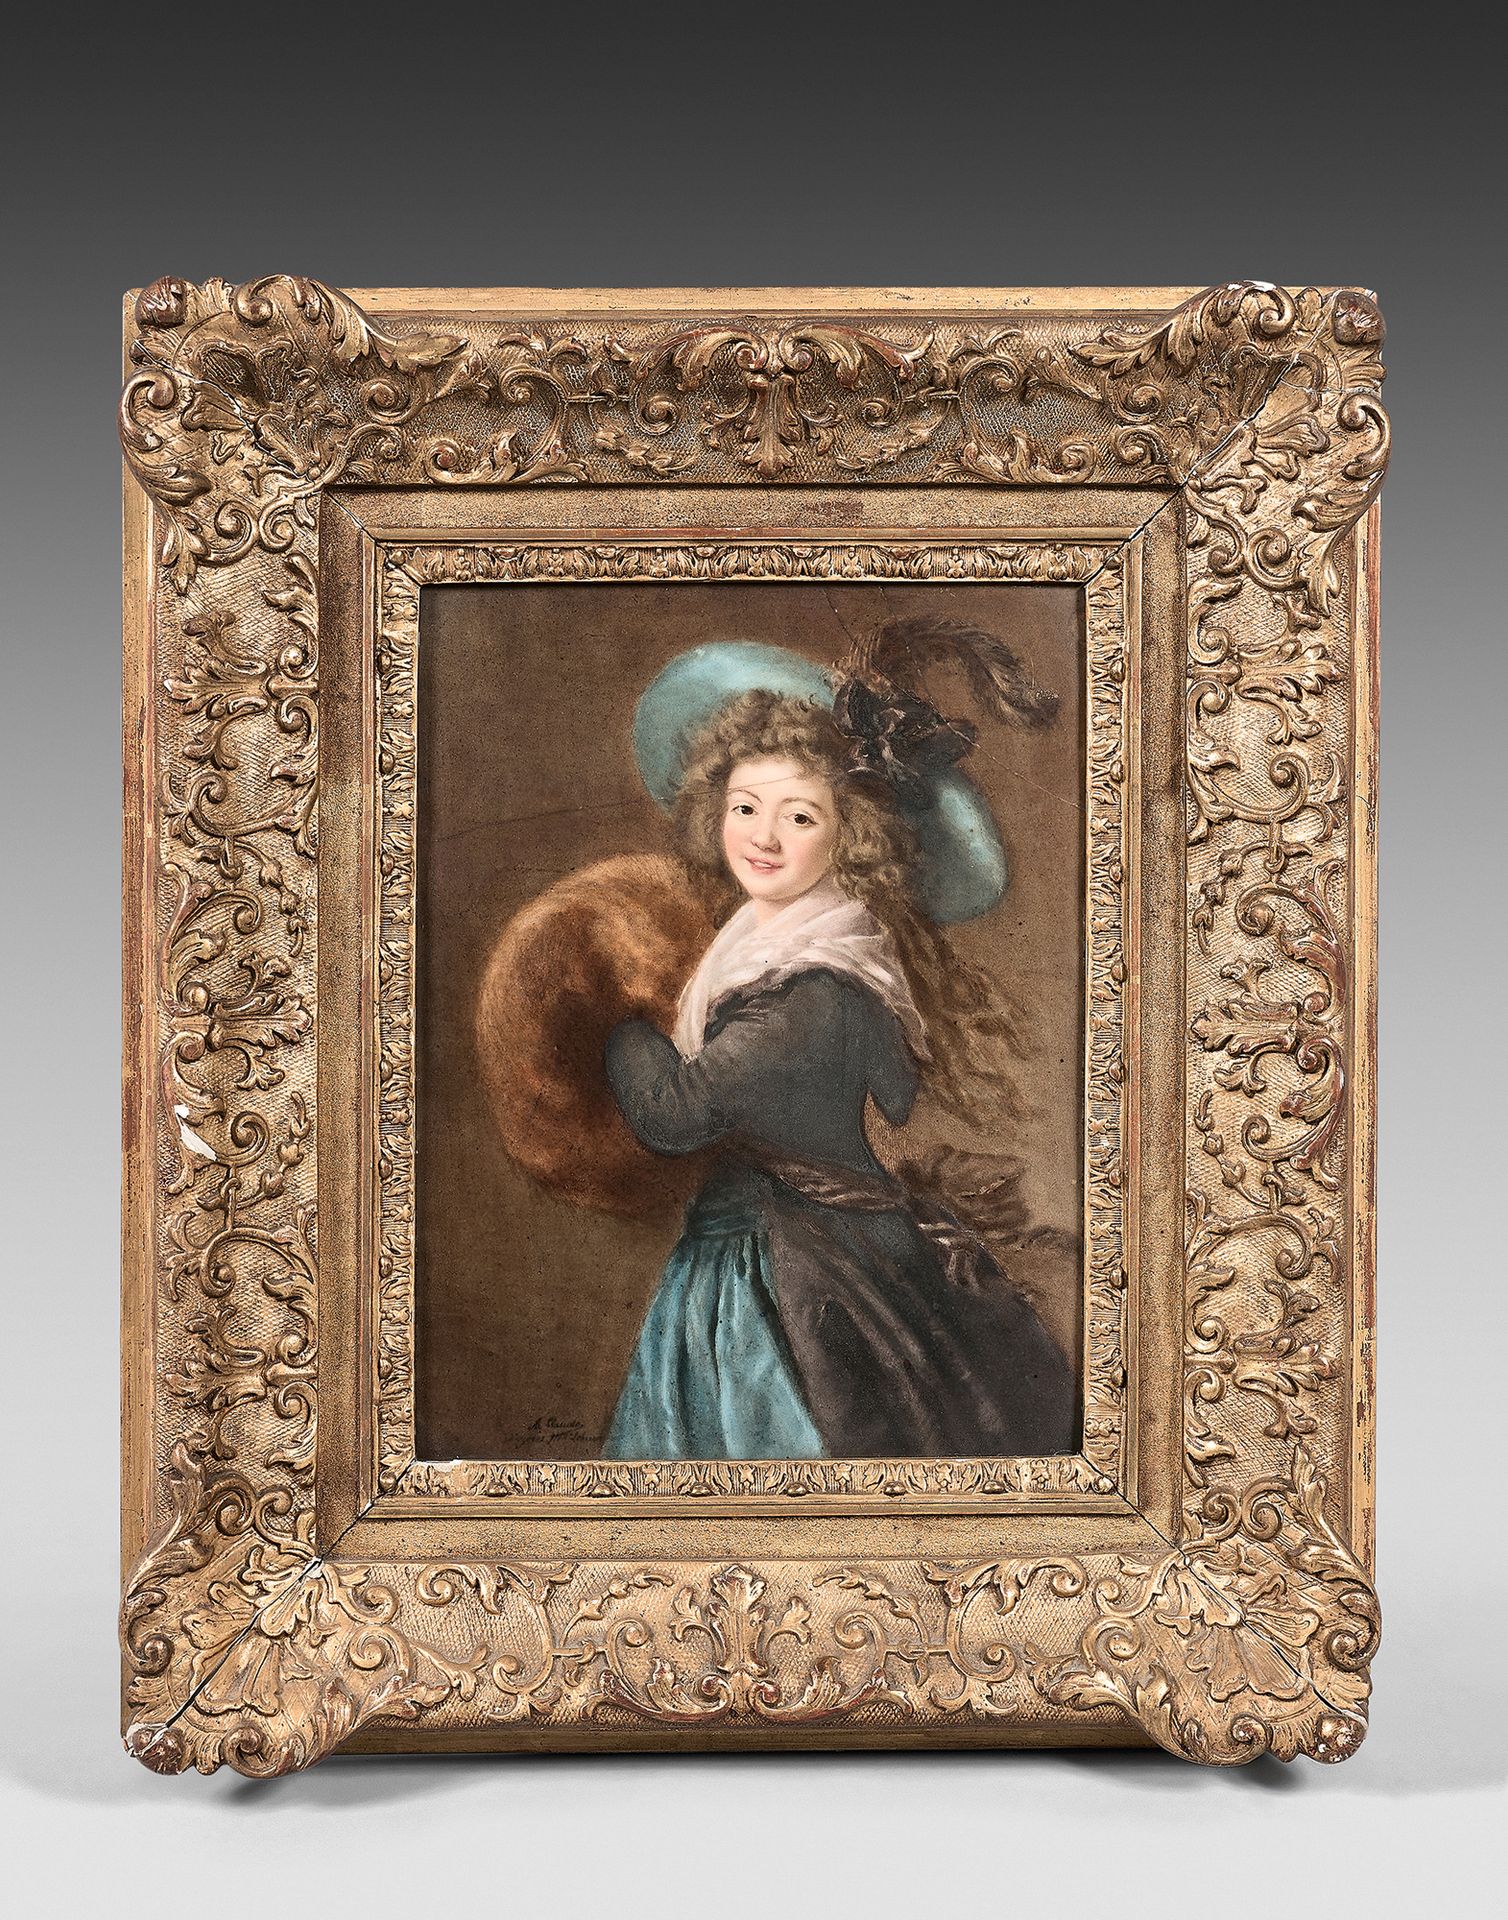 A. CLAUDE (actif au XIXe siècle) 莫莱-雷蒙德夫人的画像
瓷器。
27 x 20 cm
左下角署名：A.克劳德/在勒布伦夫人之后&hellip;